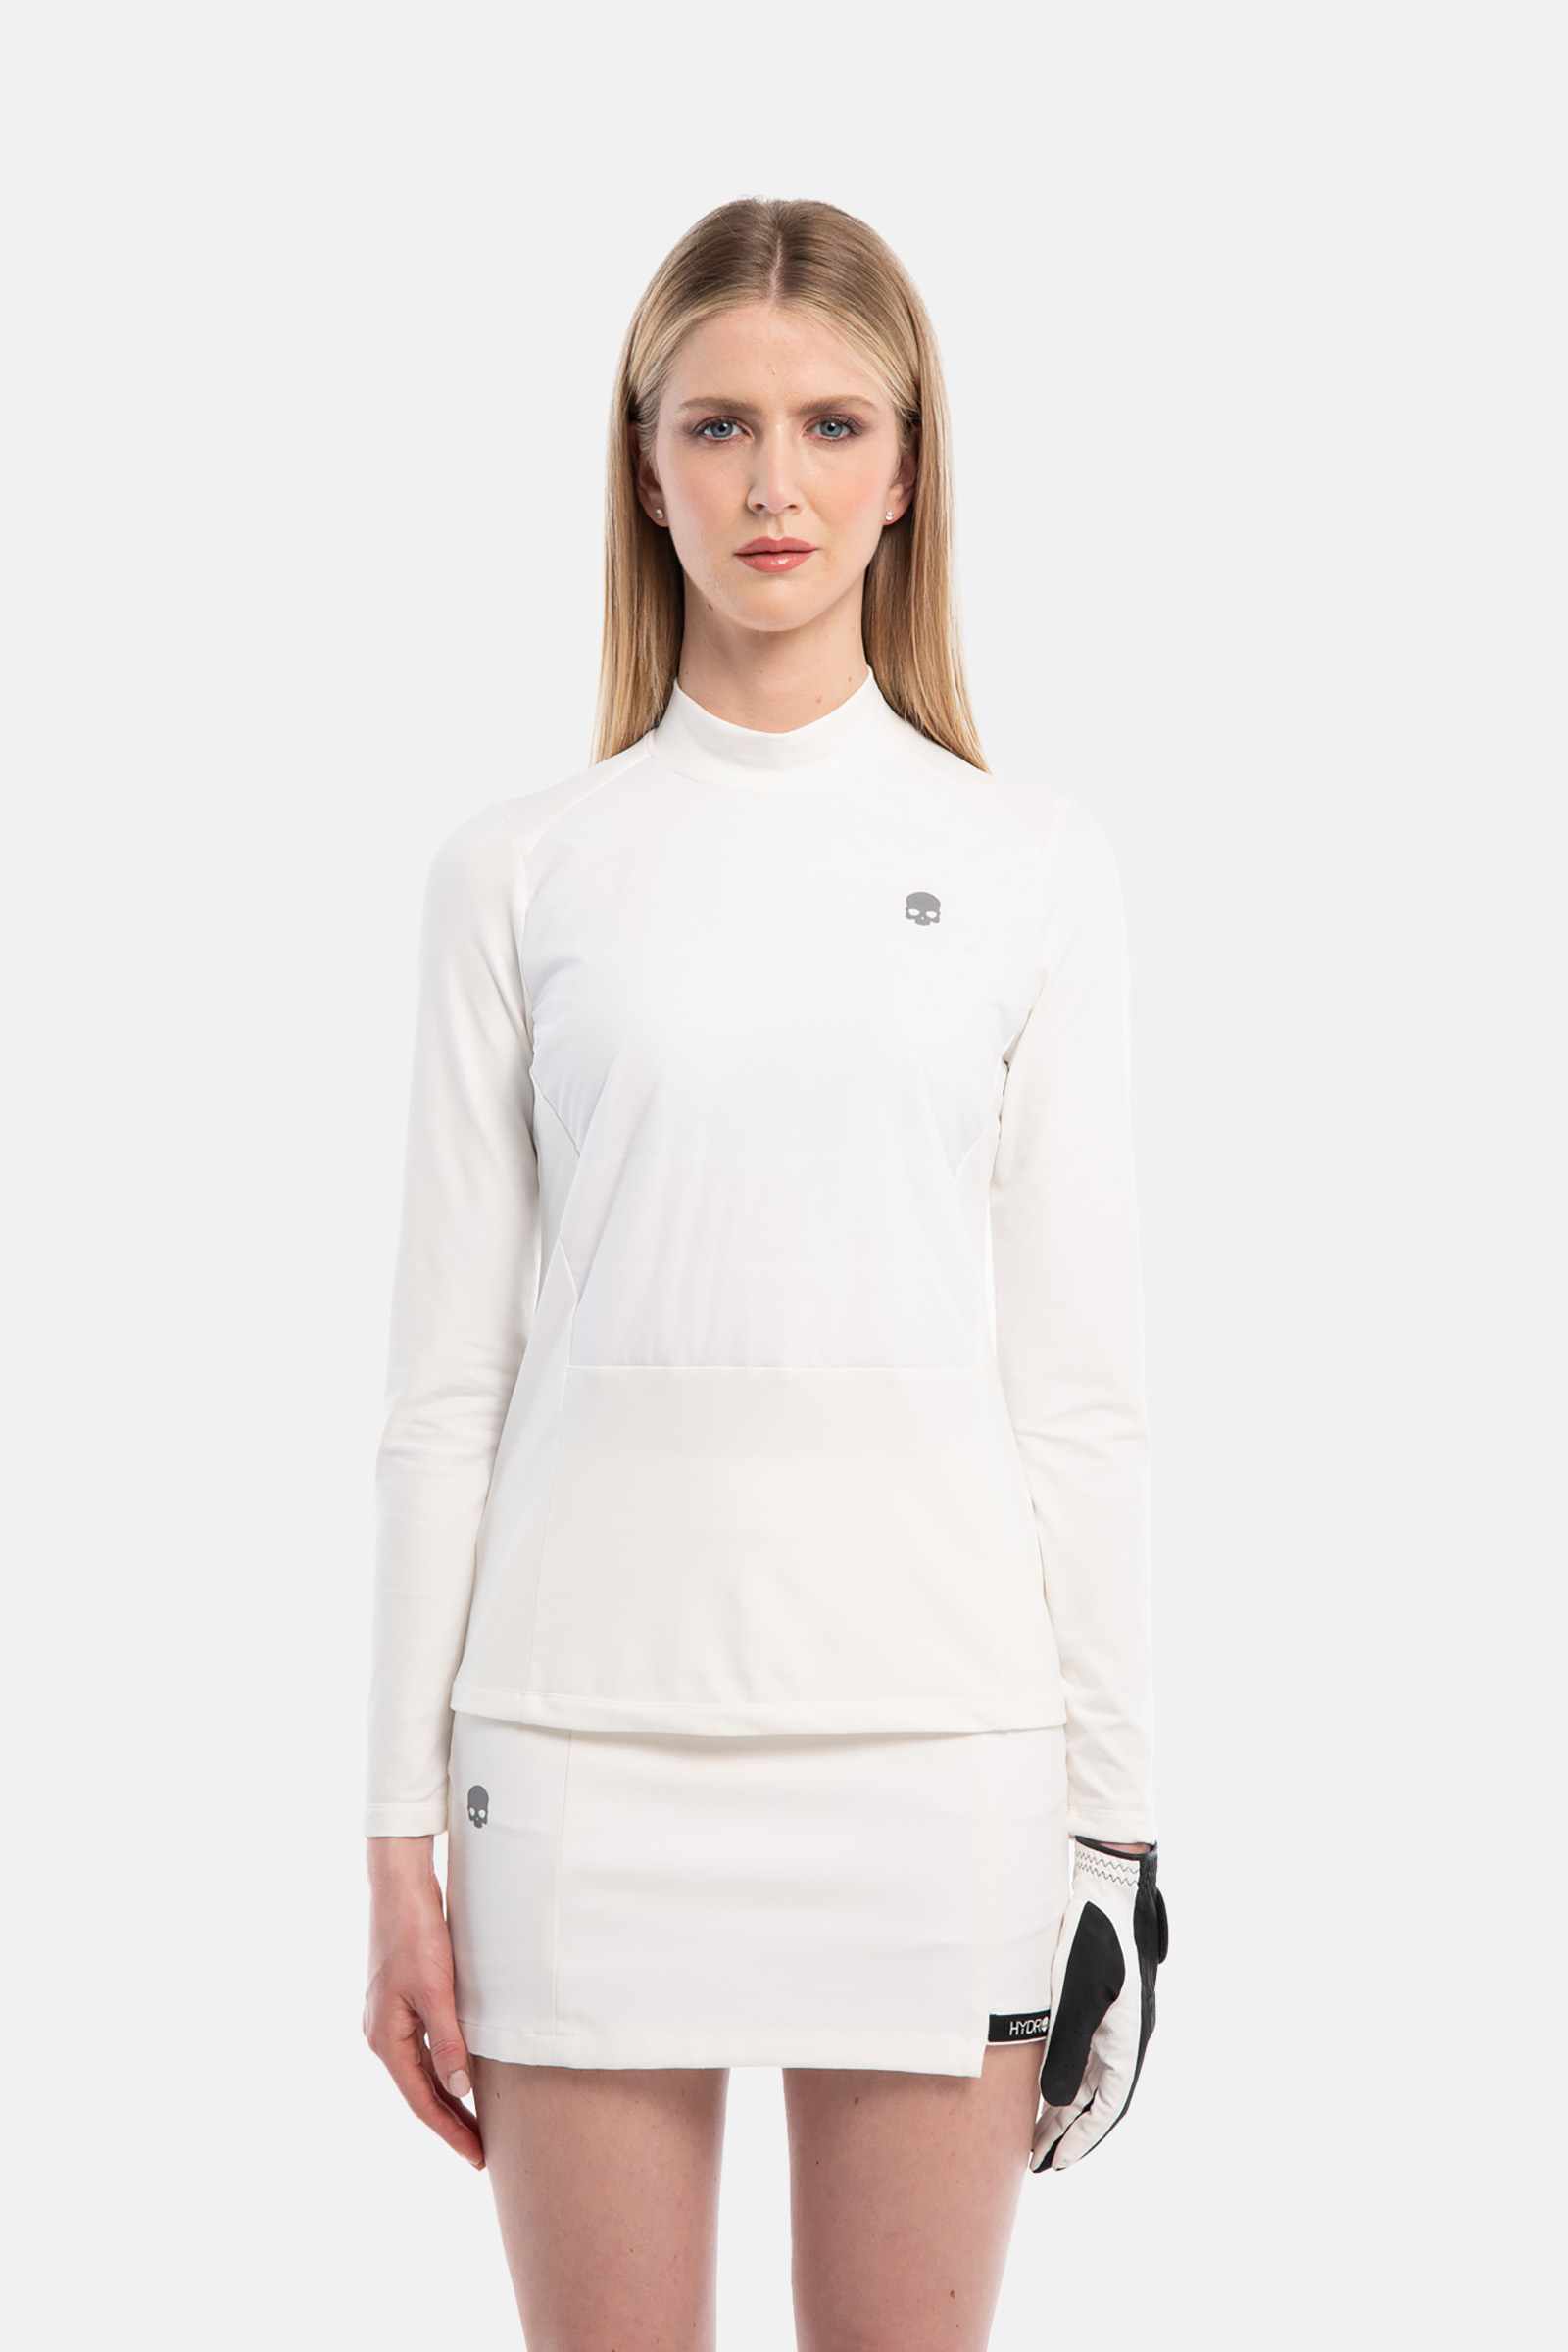 TECH ROLL NECK LS - WHITE - Hydrogen - Luxury Sportwear